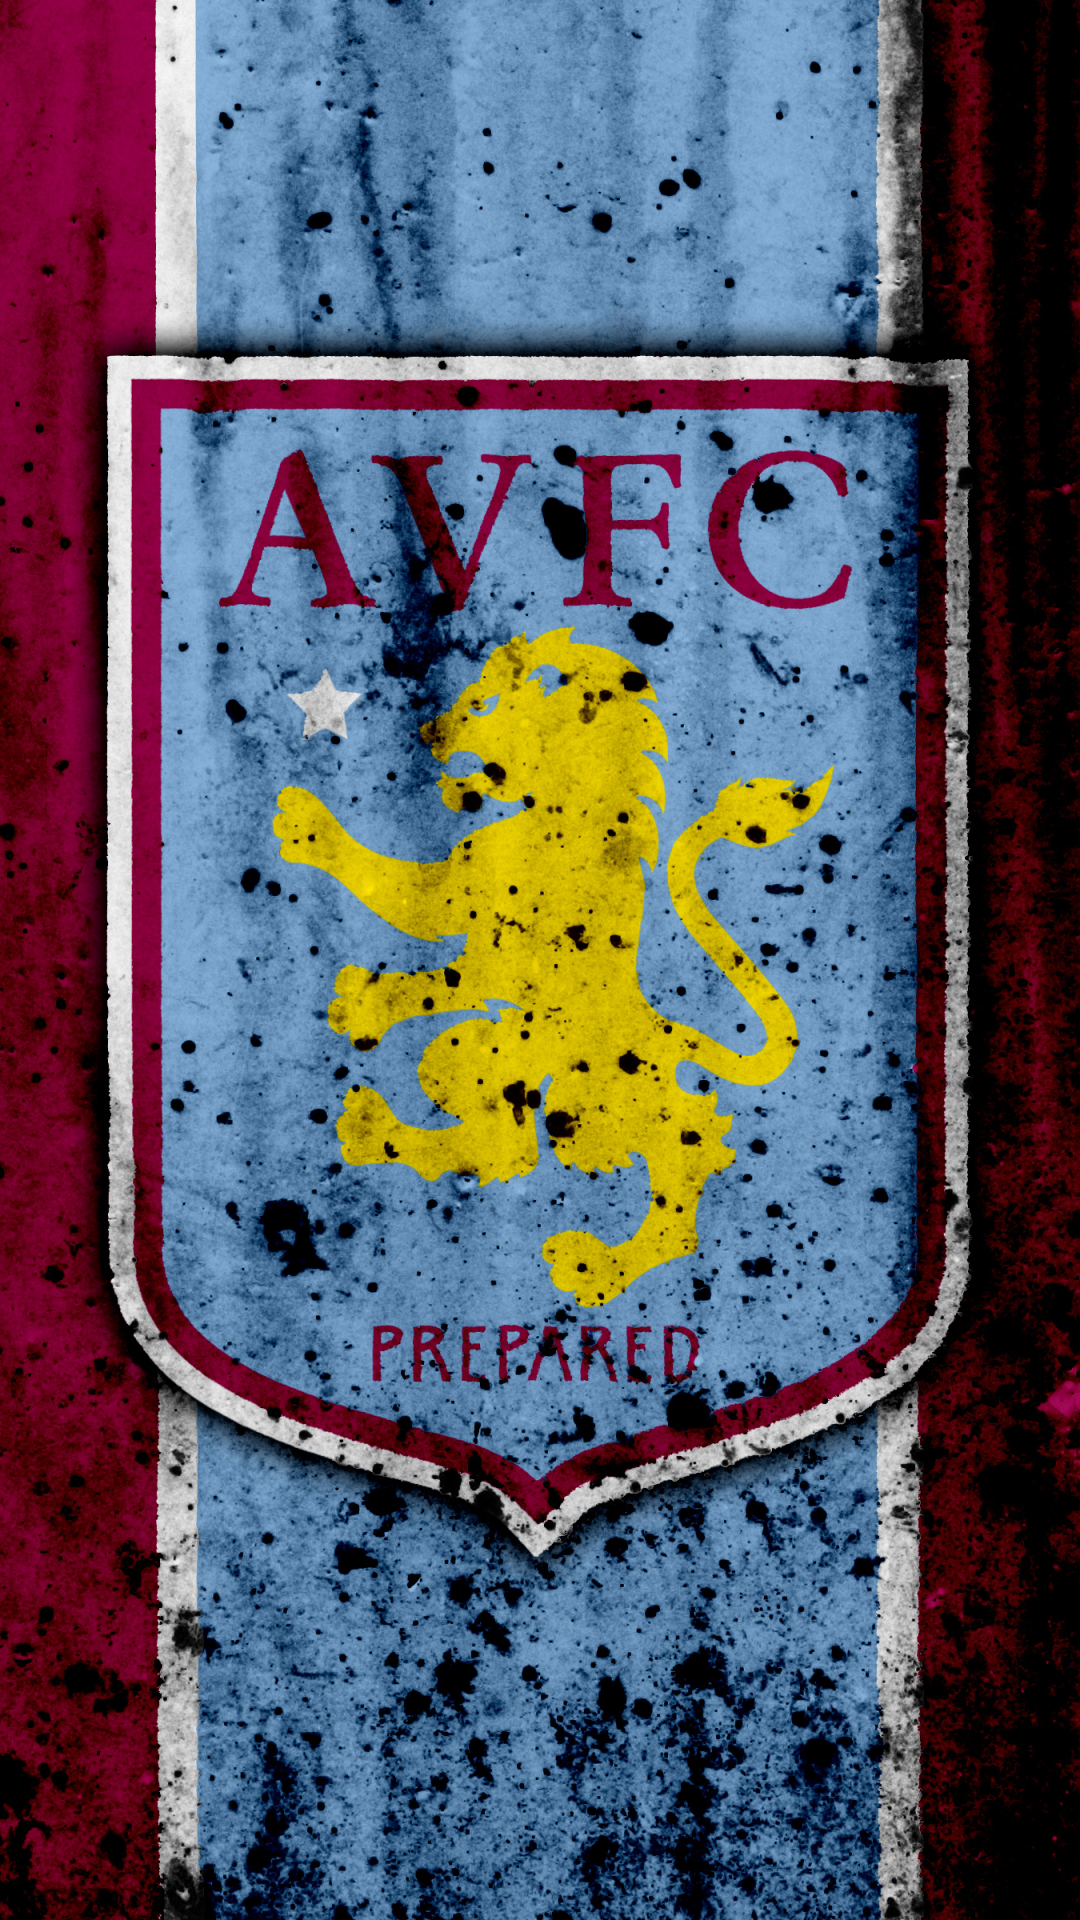 Descarga gratuita de fondo de pantalla para móvil de Fútbol, Logo, Emblema, Deporte, Aston Villa Fc.